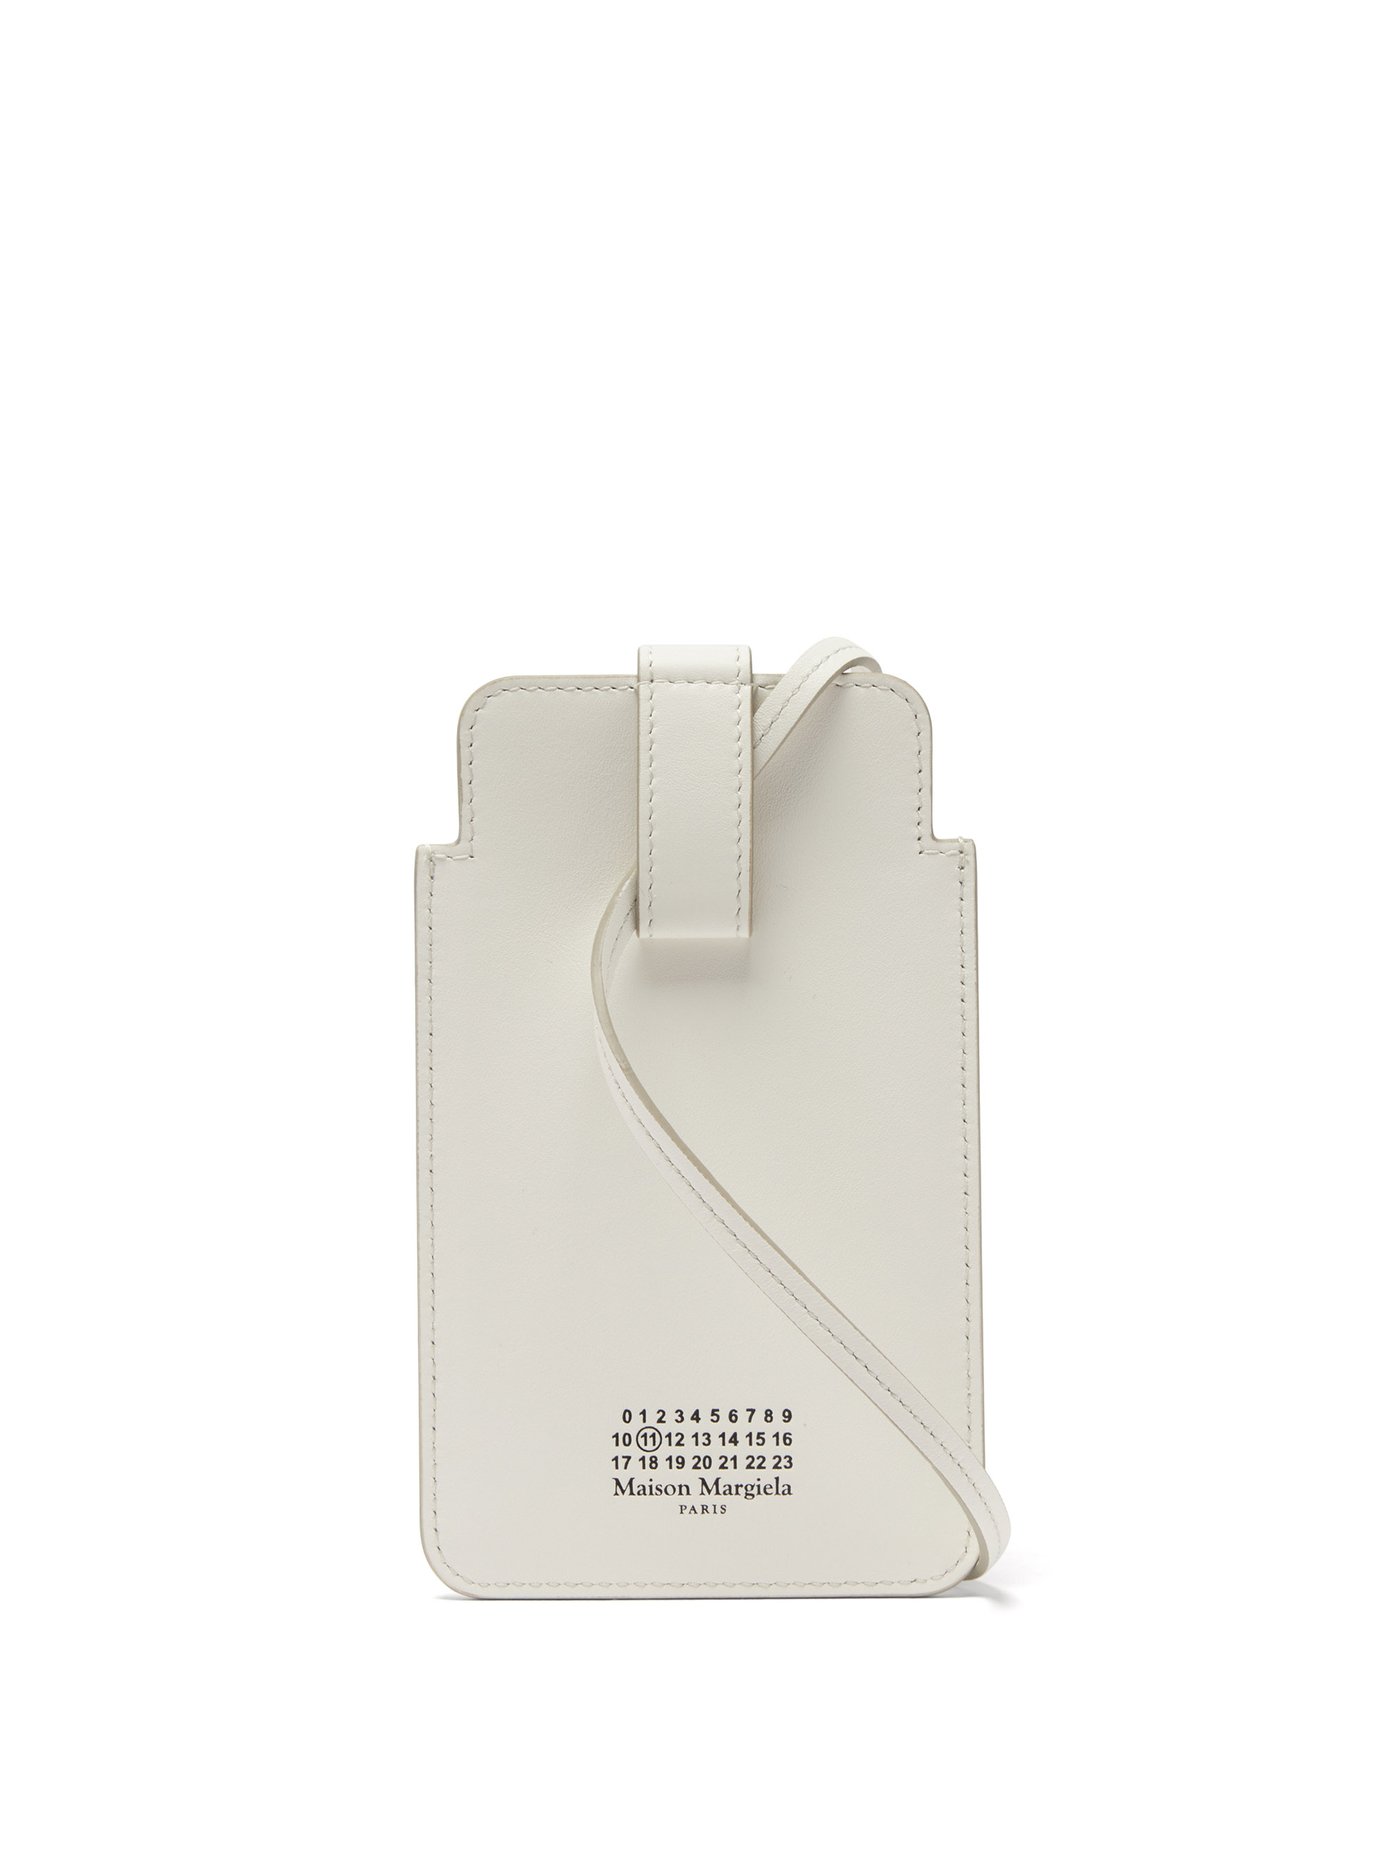 메종 마르지엘라 로고 프린트 폰백 Maison Margiela White Logo-print leather phone pouch